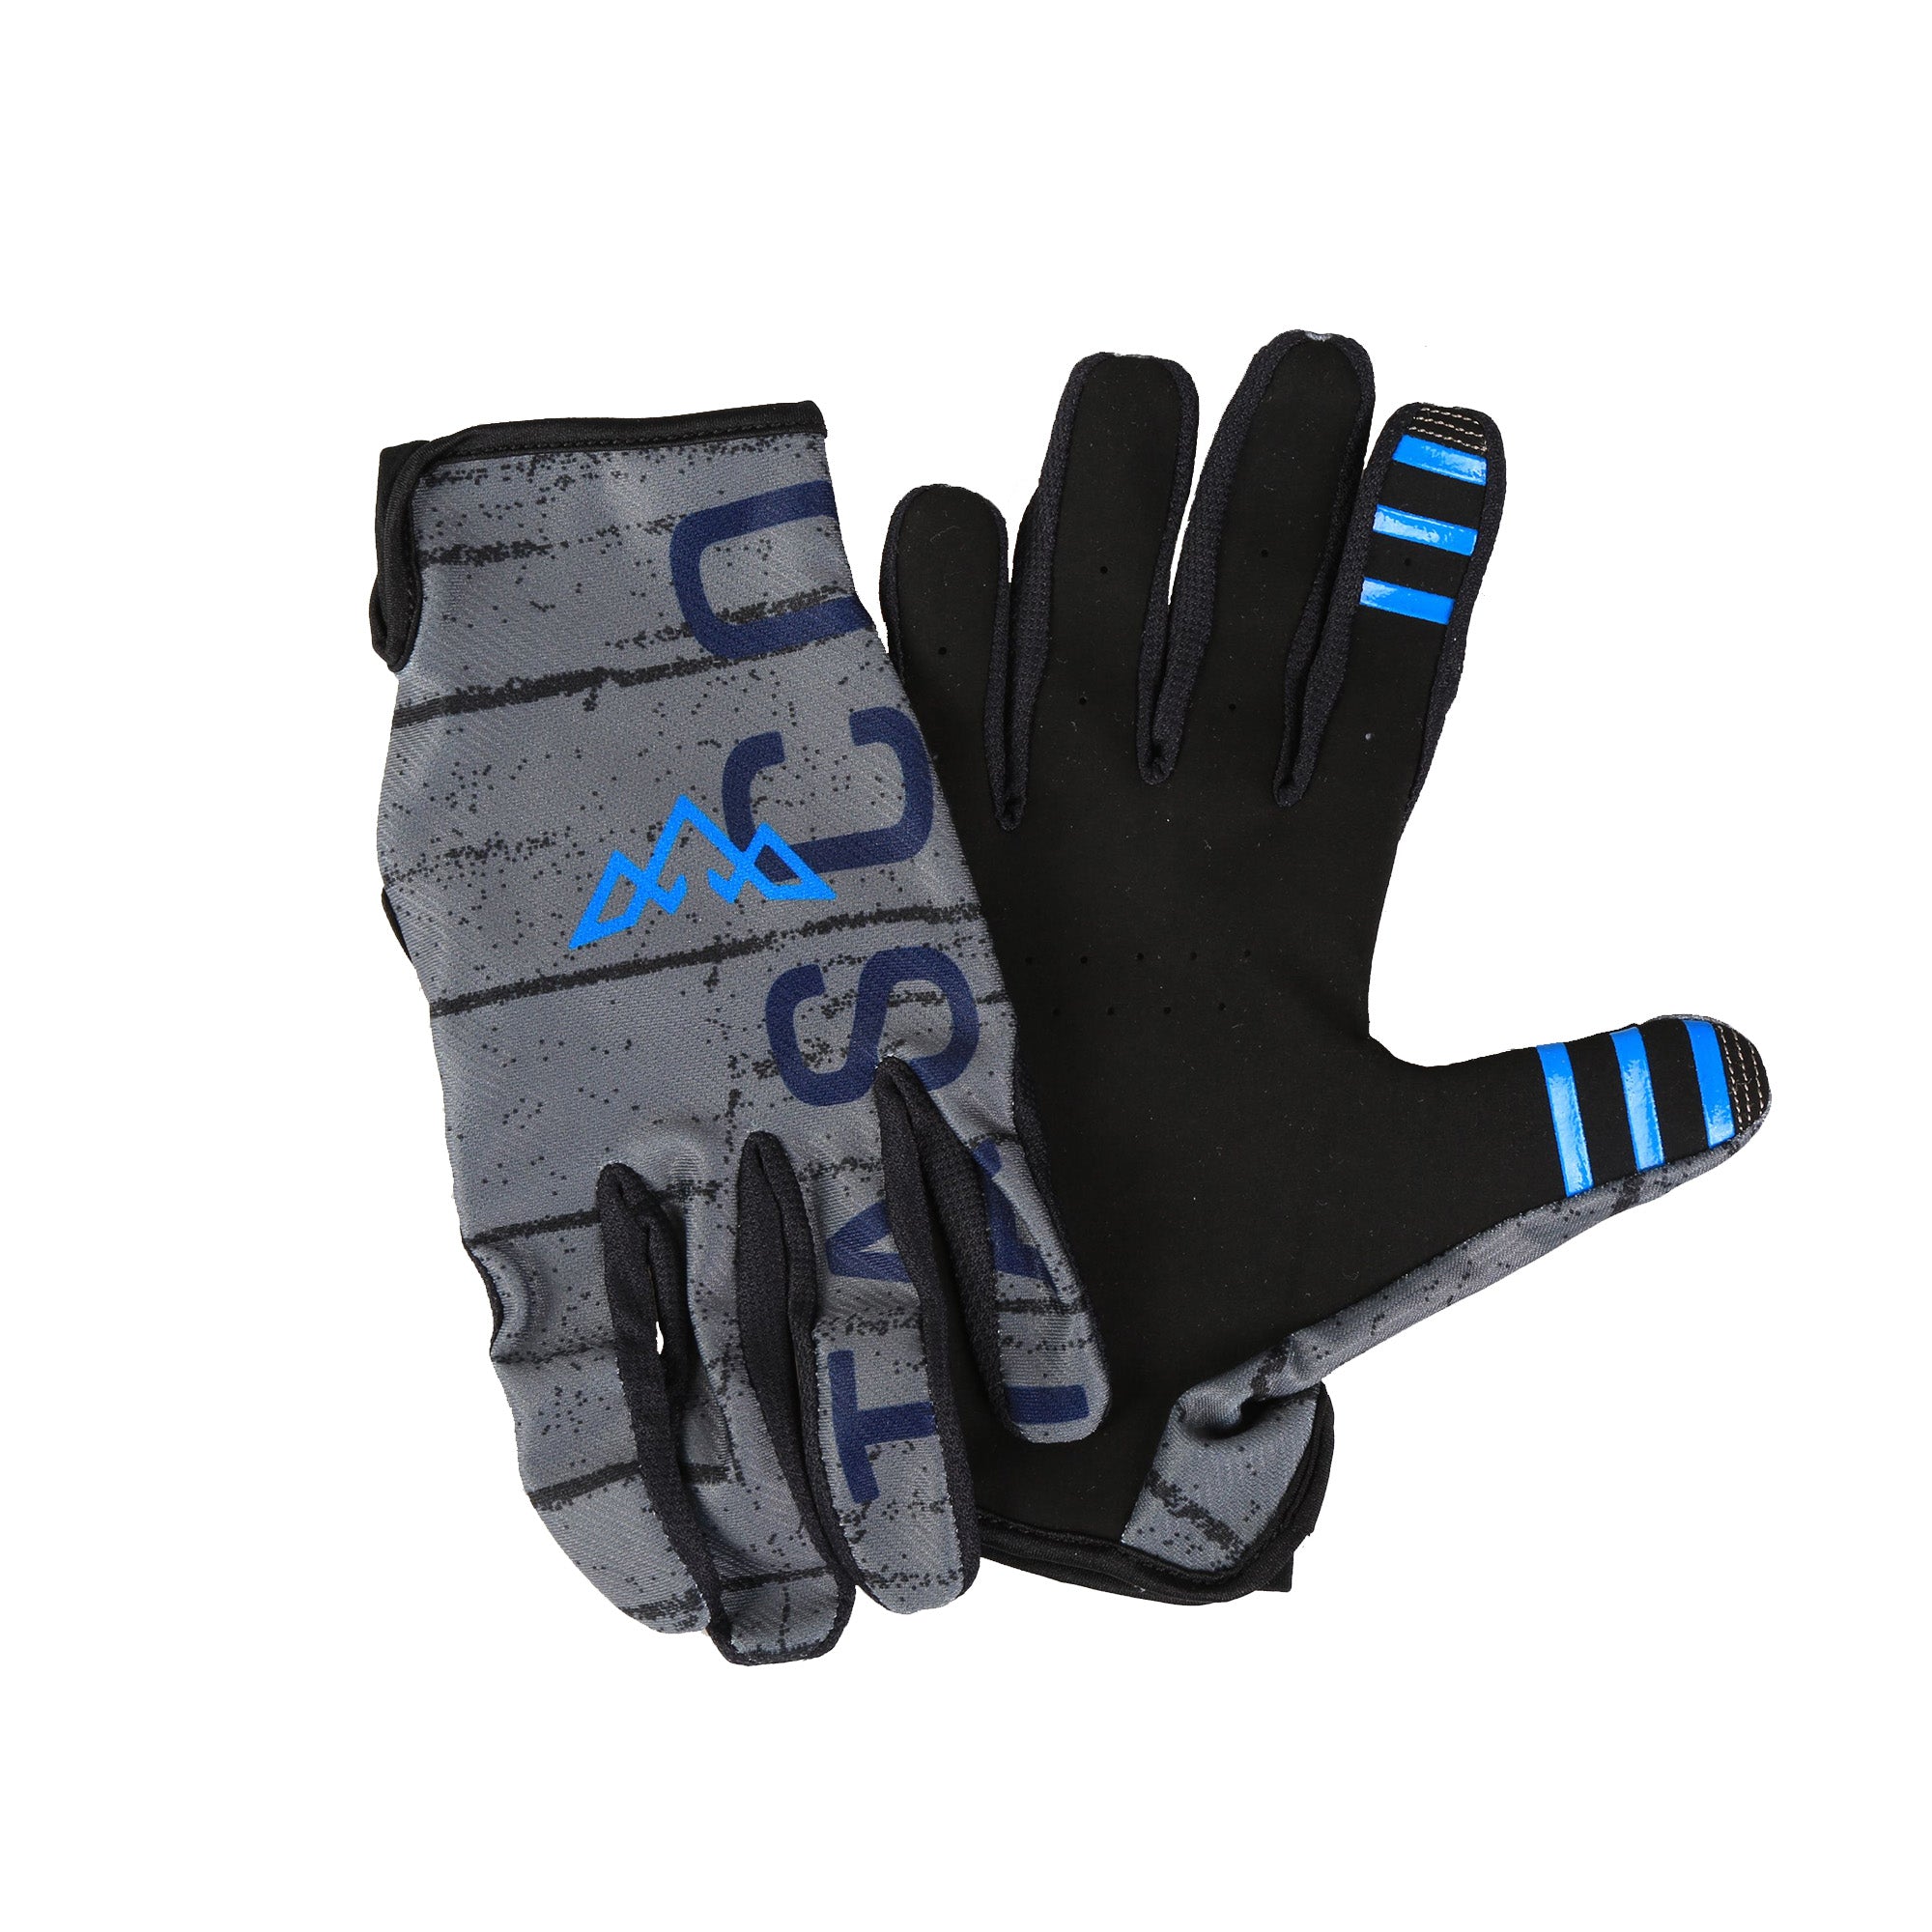 Ridgeline Gloves - Blue Steel (Size S Only)